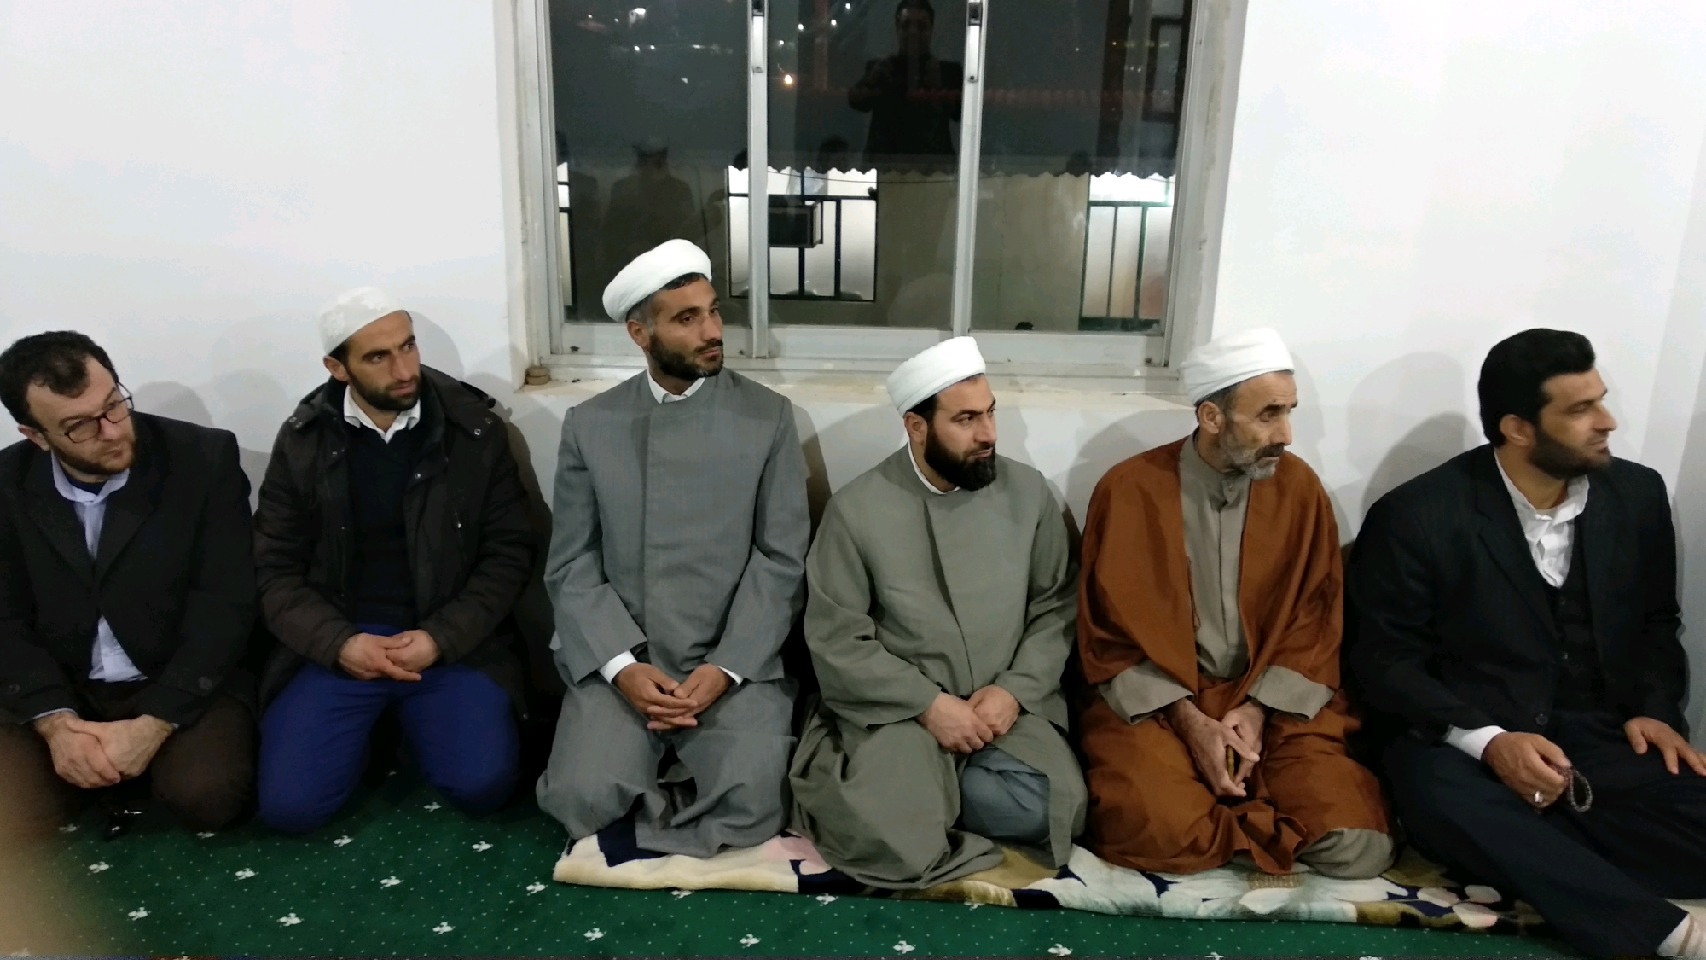 اتحاد و همبستگی مسلمانان مهمترین نیاز جهان اسلام